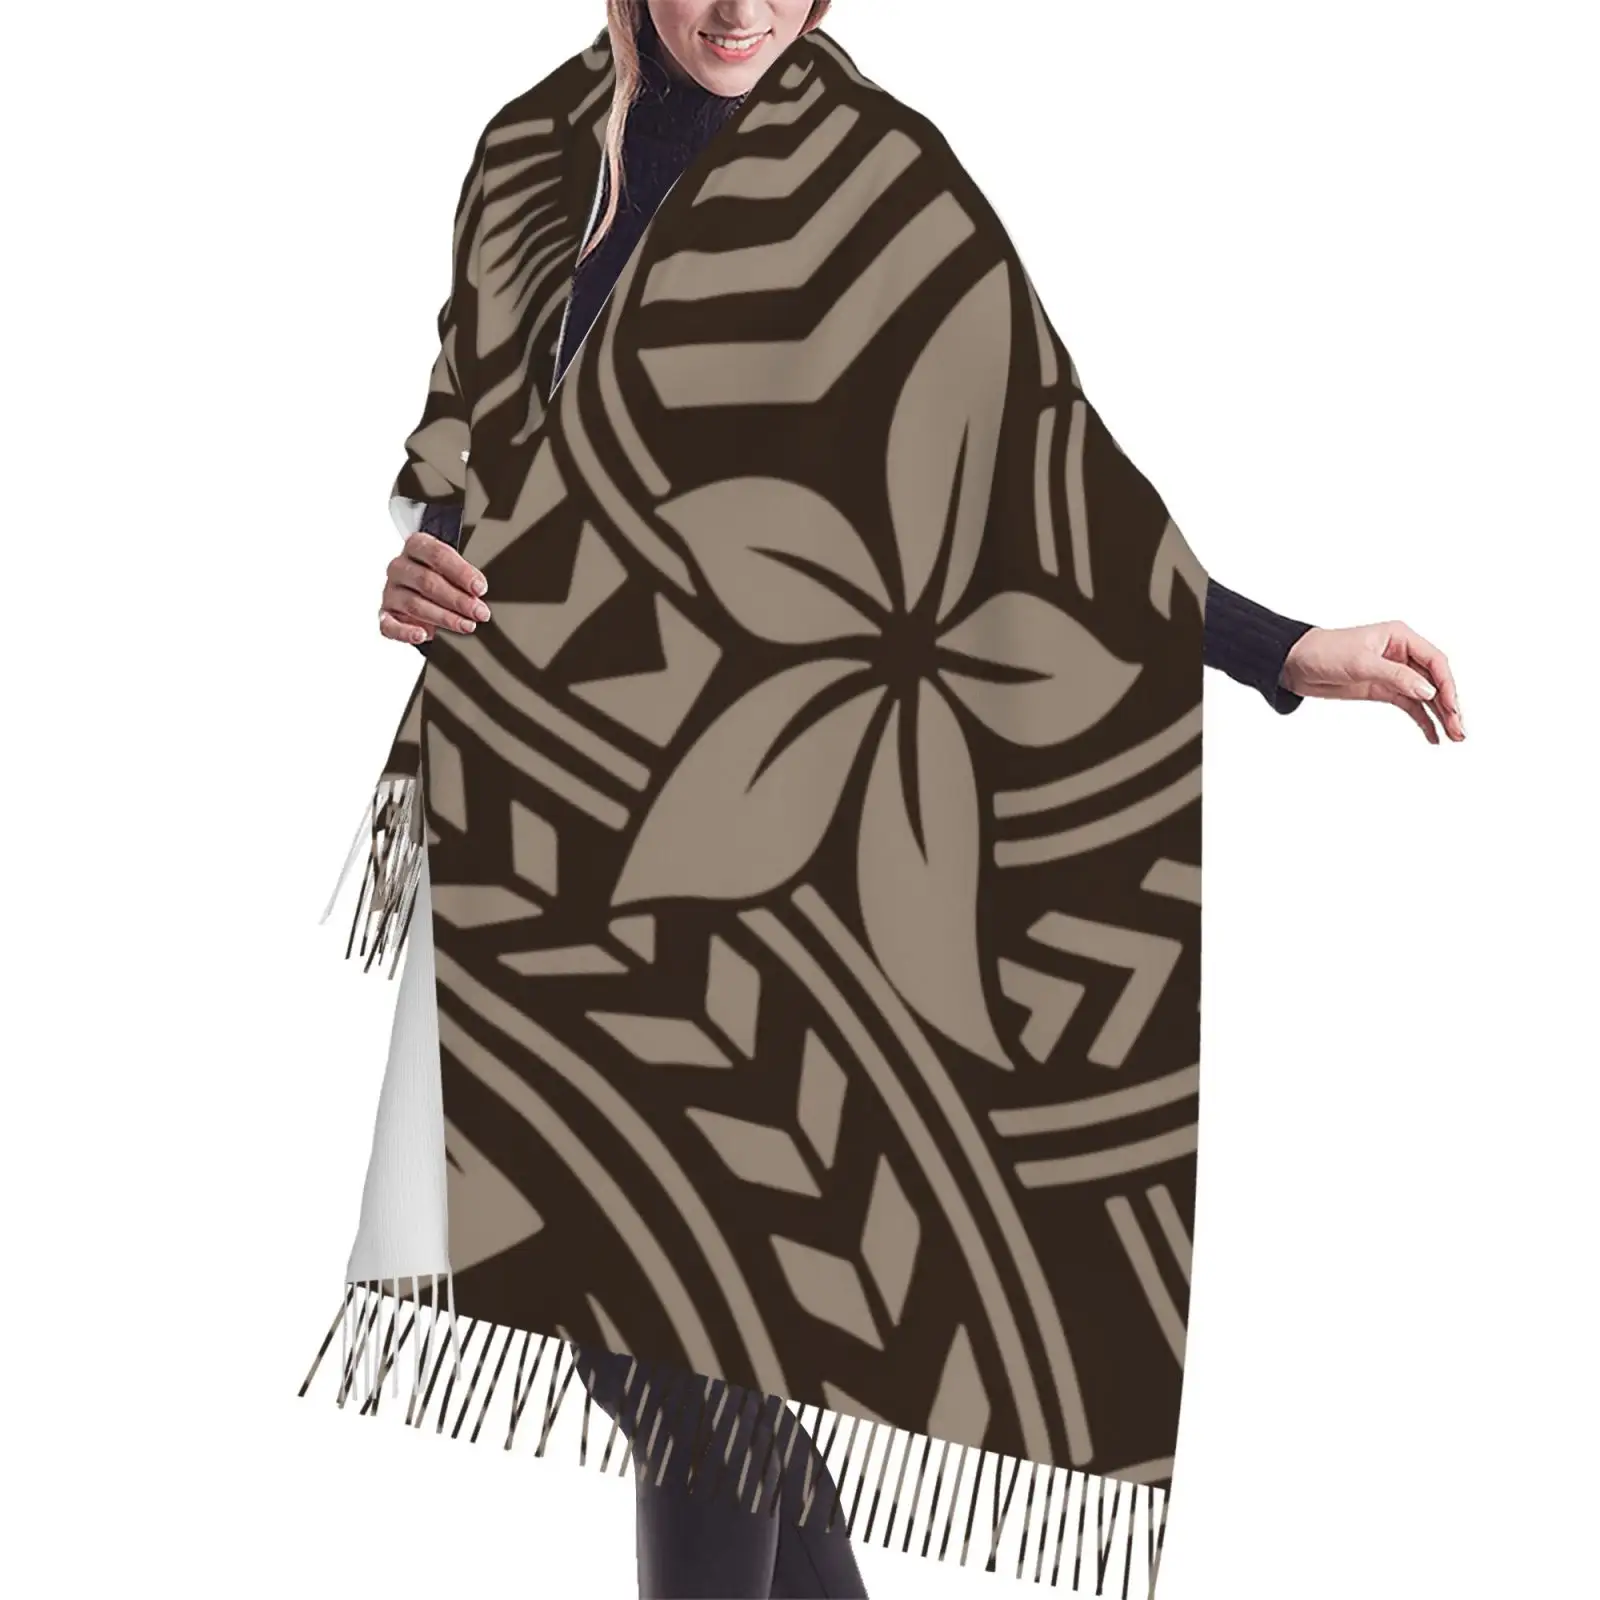 OEMカスタム秋冬厚みのあるカシミアスカーフプルメリアフラワープリントポリネシア部族女性ロングカシミヤスカーフショール